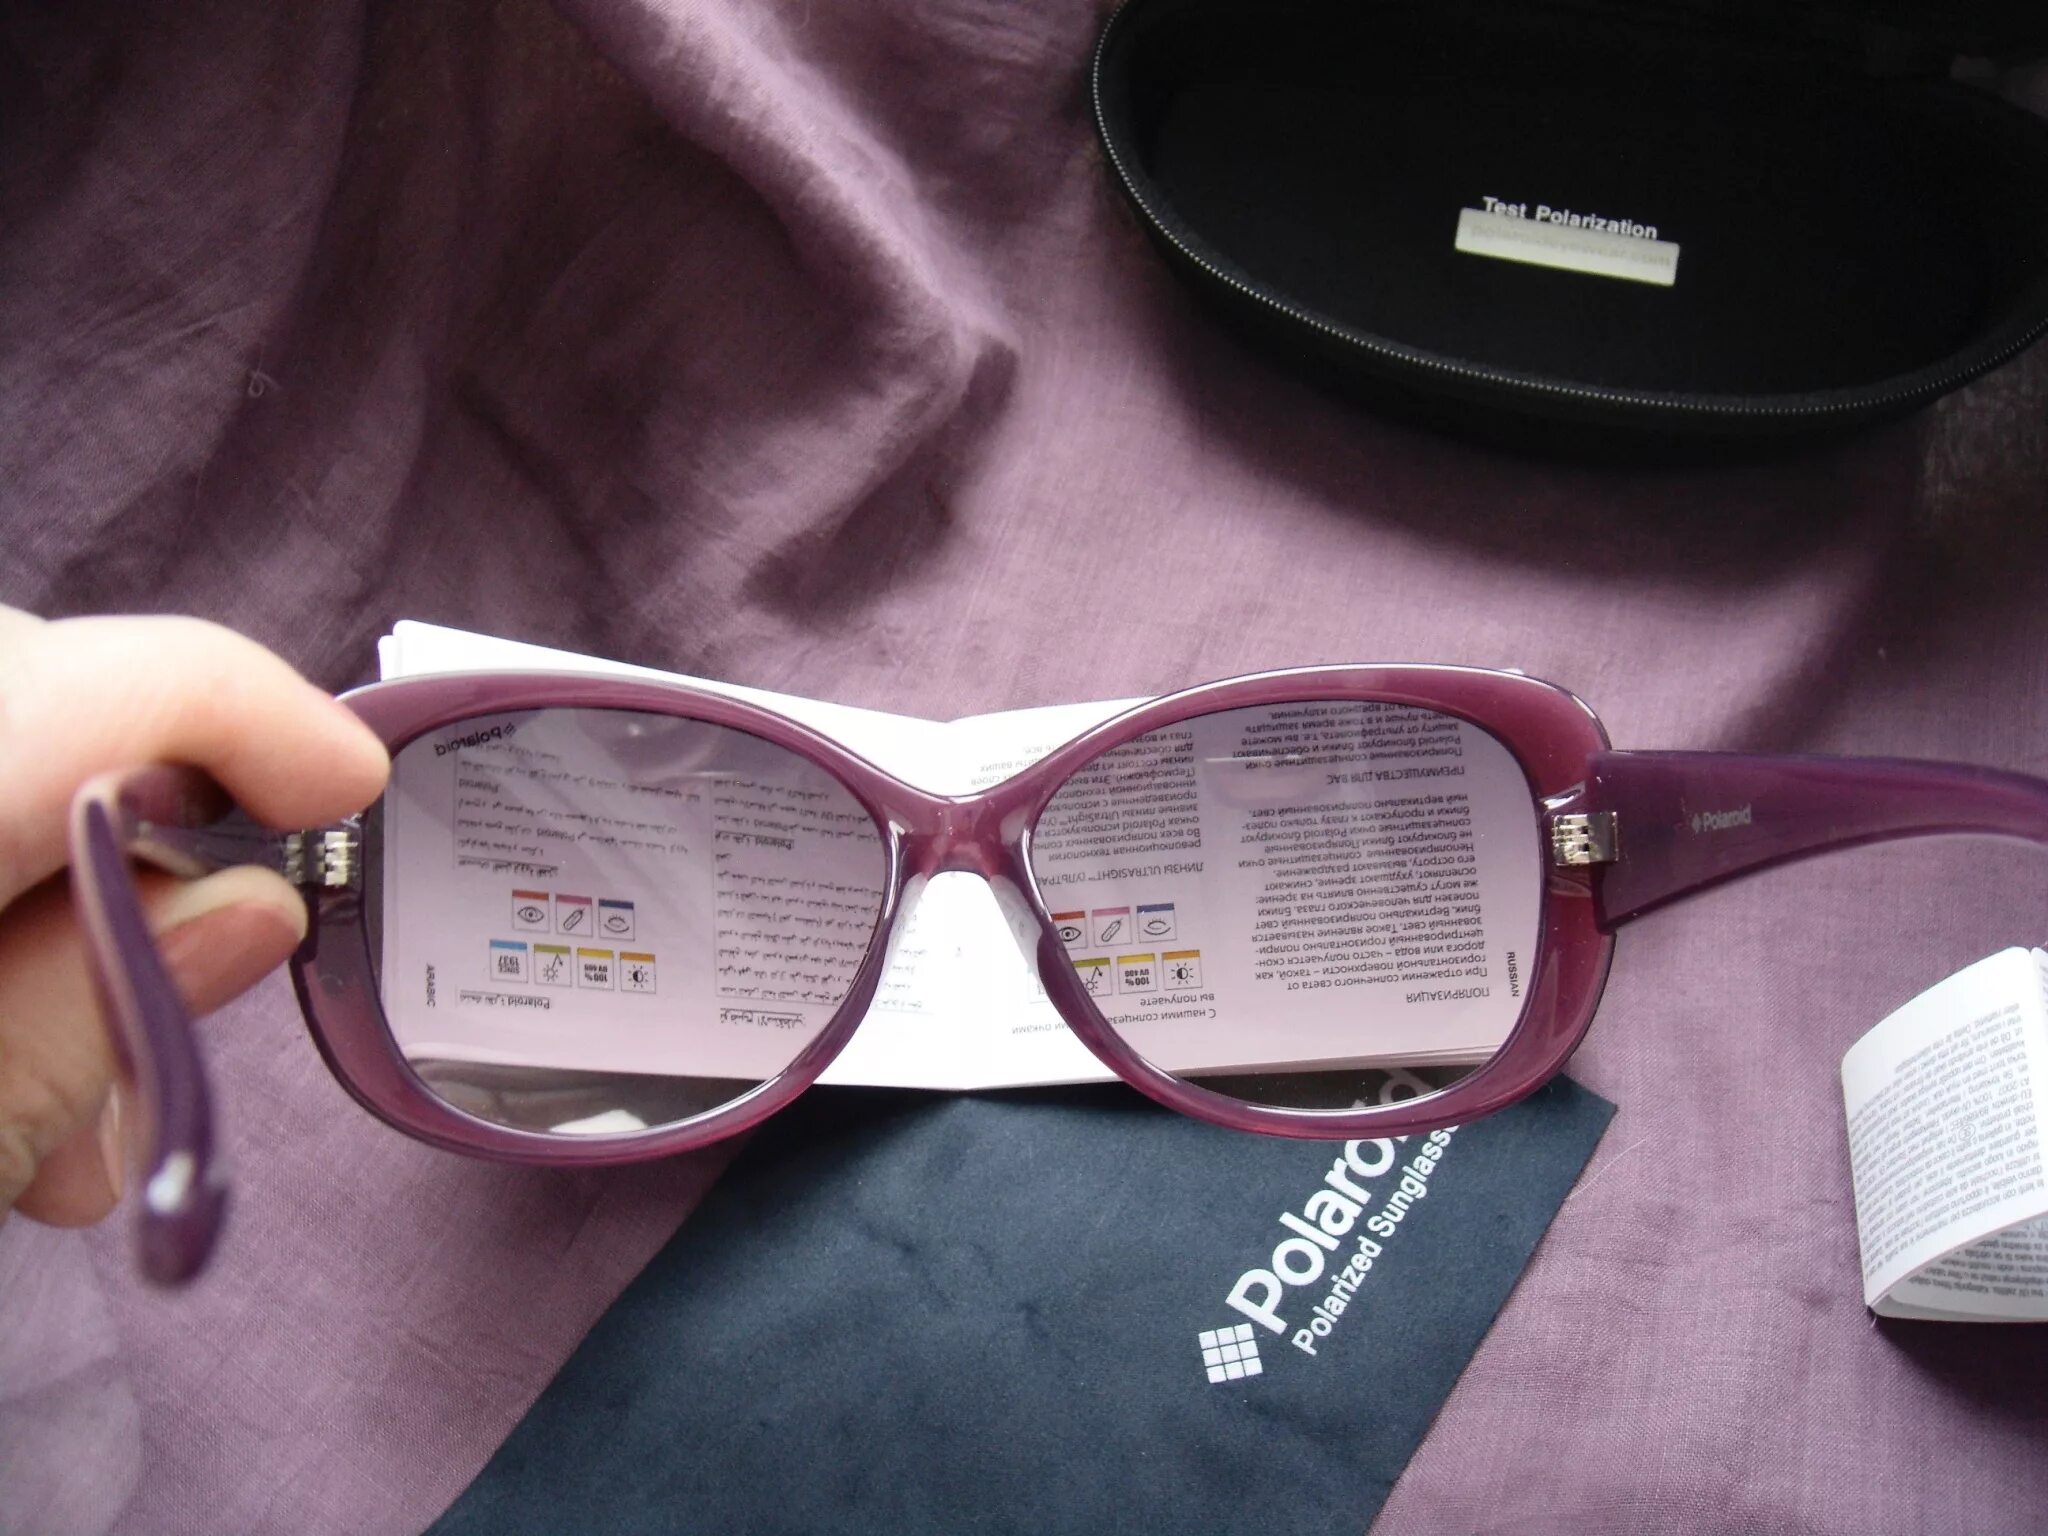 Очки солнцезащитные Polaroid p8317a. P8317a очки Polaroid. Polaroid 2118 очки комплектация. Очки 2138 полароид. Как проверить очки на оригинальность